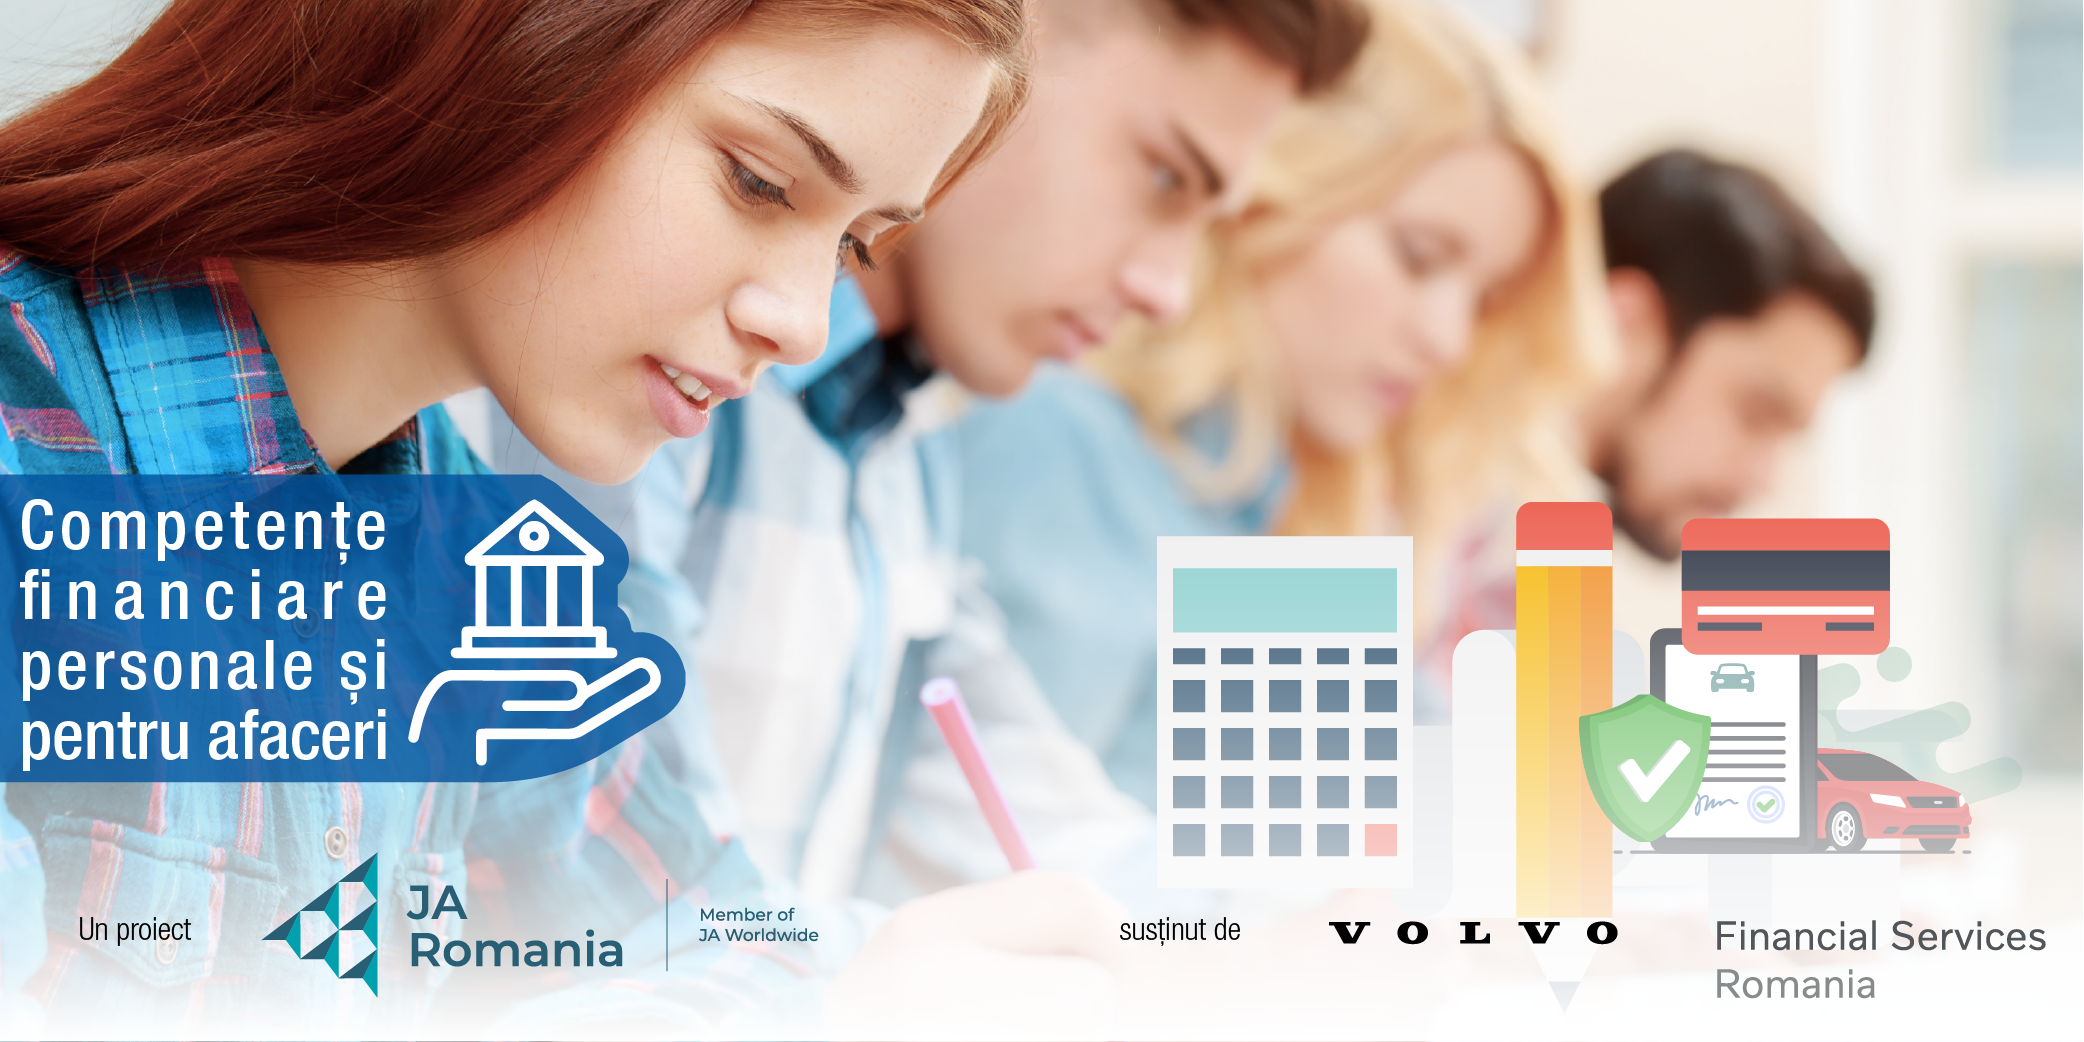 Junior Achievement și Volvo Financial Services dau startul proiectului internațional Competențe financiare personale și pentru afaceri în România